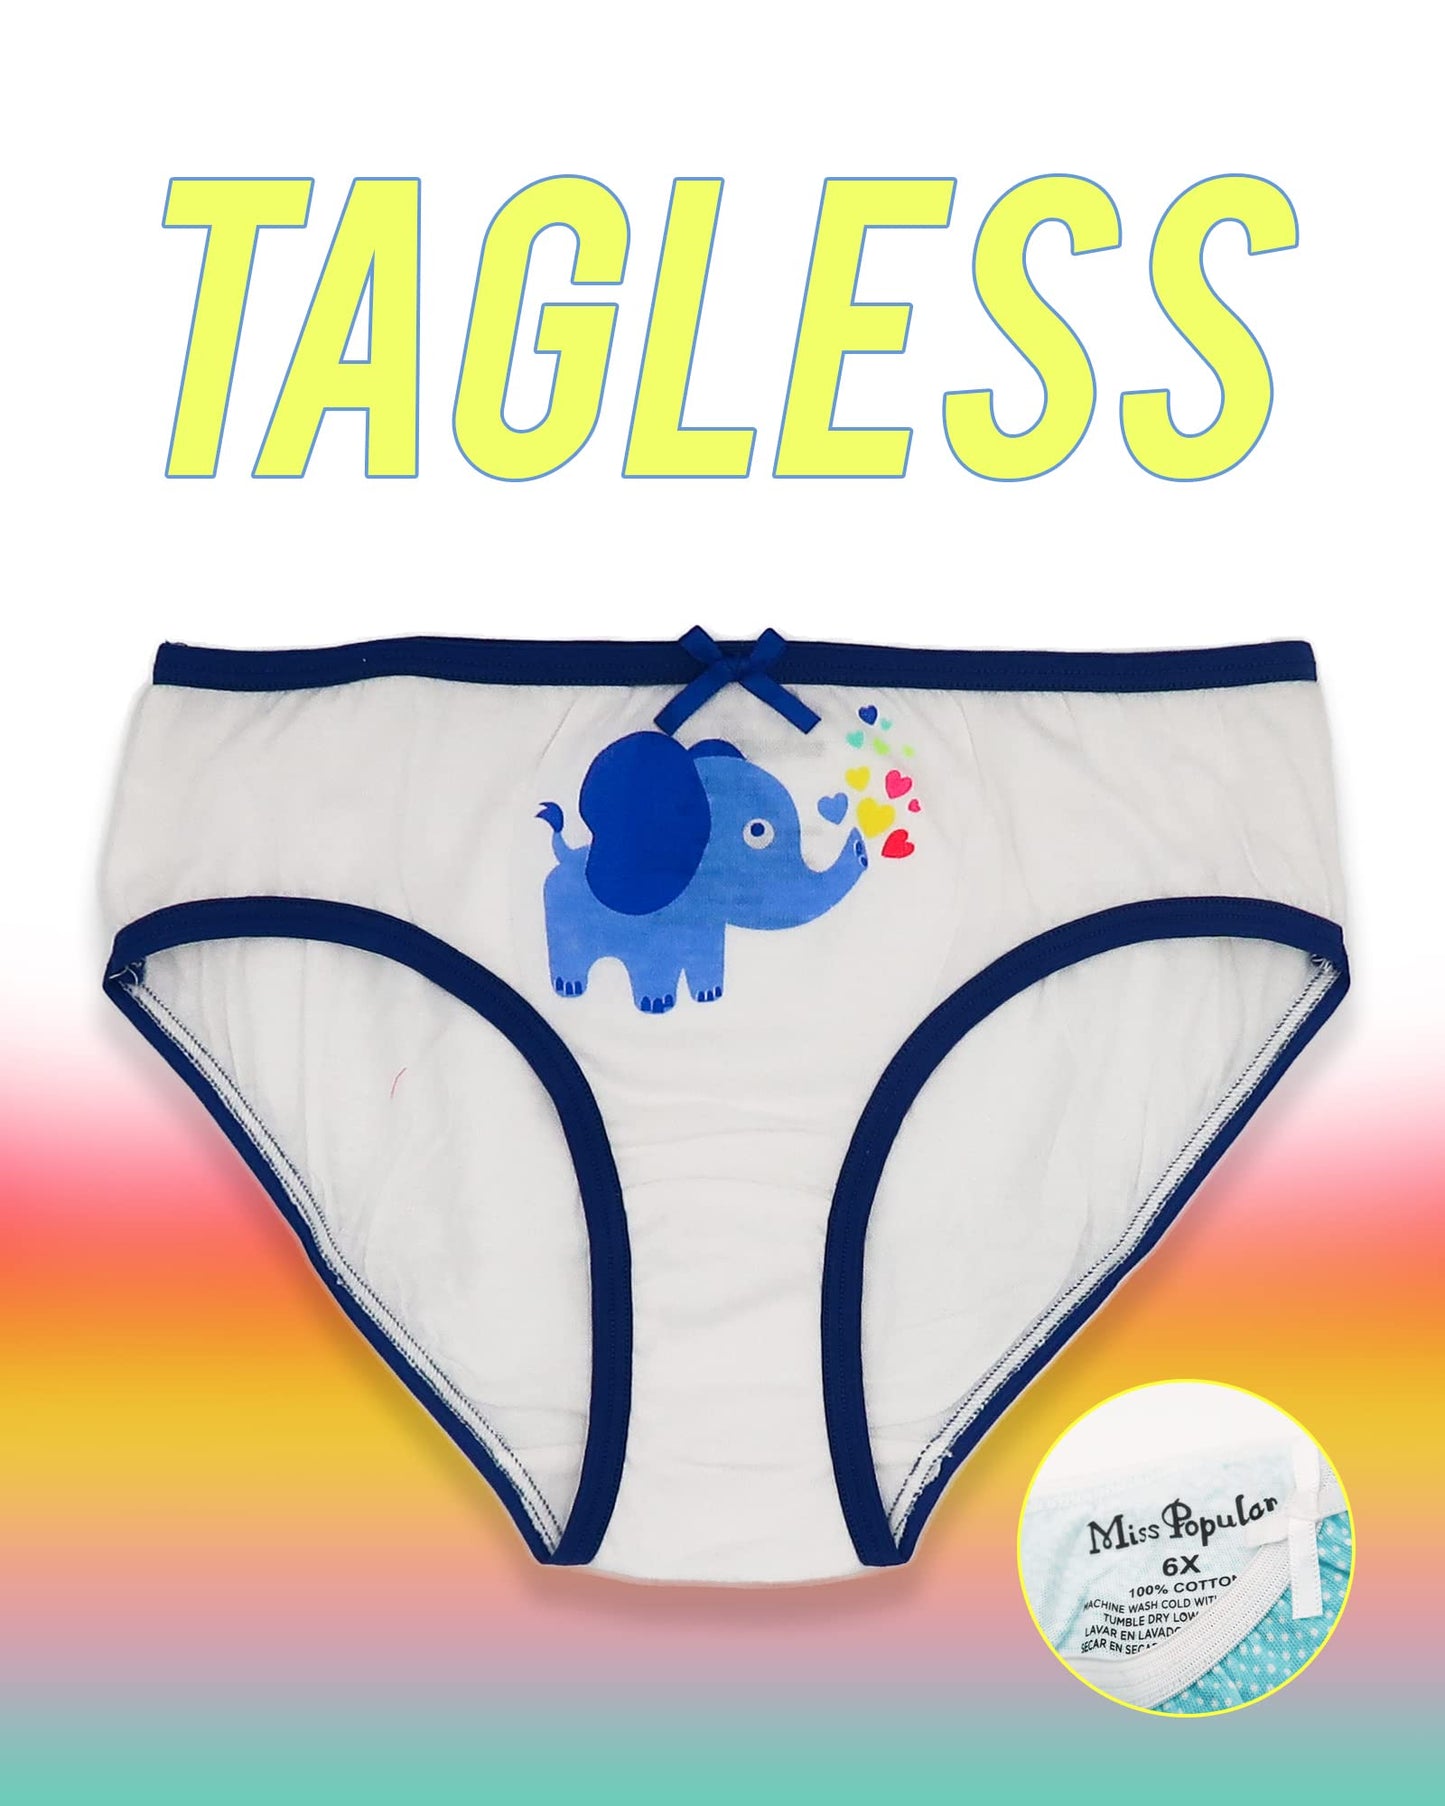 Girls 6-Pack Soft Cotton Underwear Tagless Basic Panty Briefs| Sizes 2T - 14/16